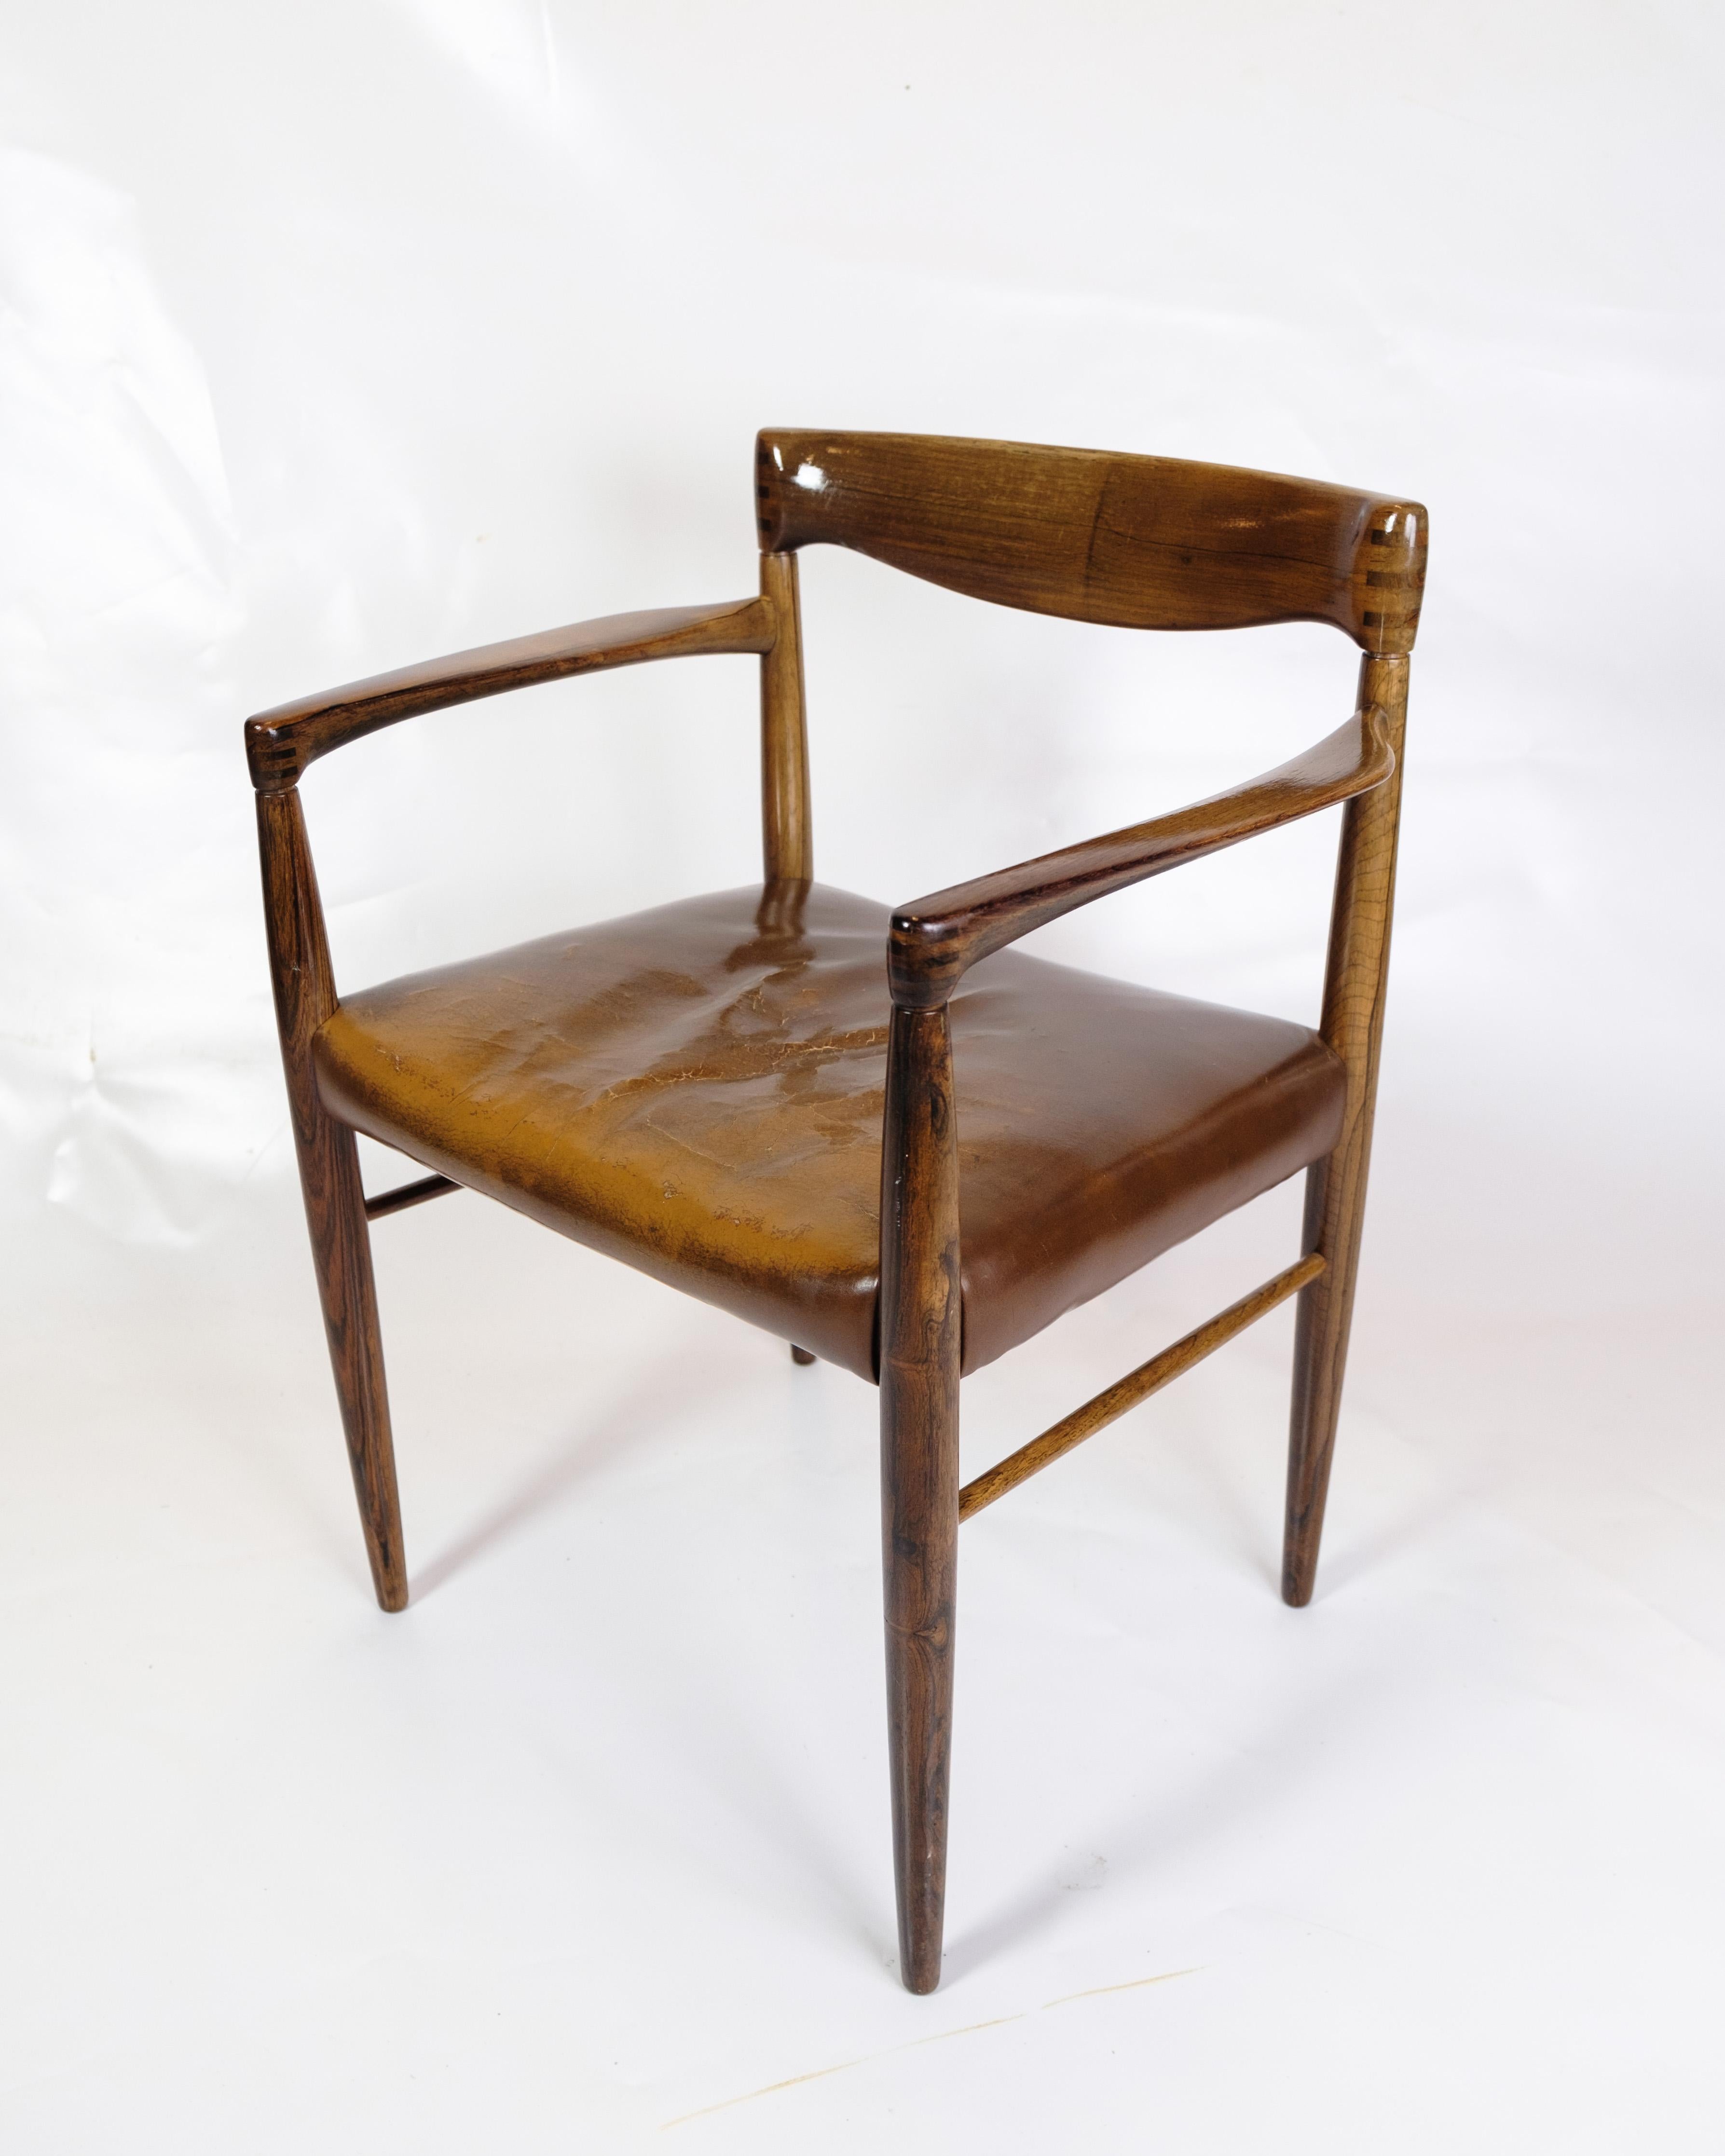 Ce fauteuil est un bel exemple de l'art mobilier danois des années 1960, conçu par Henry W. Klein et fabriqué par Bramin. Avec sa structure en bois de rose et son assise en cuir cognac, cette chaise respire l'élégance intemporelle et un savoir-faire